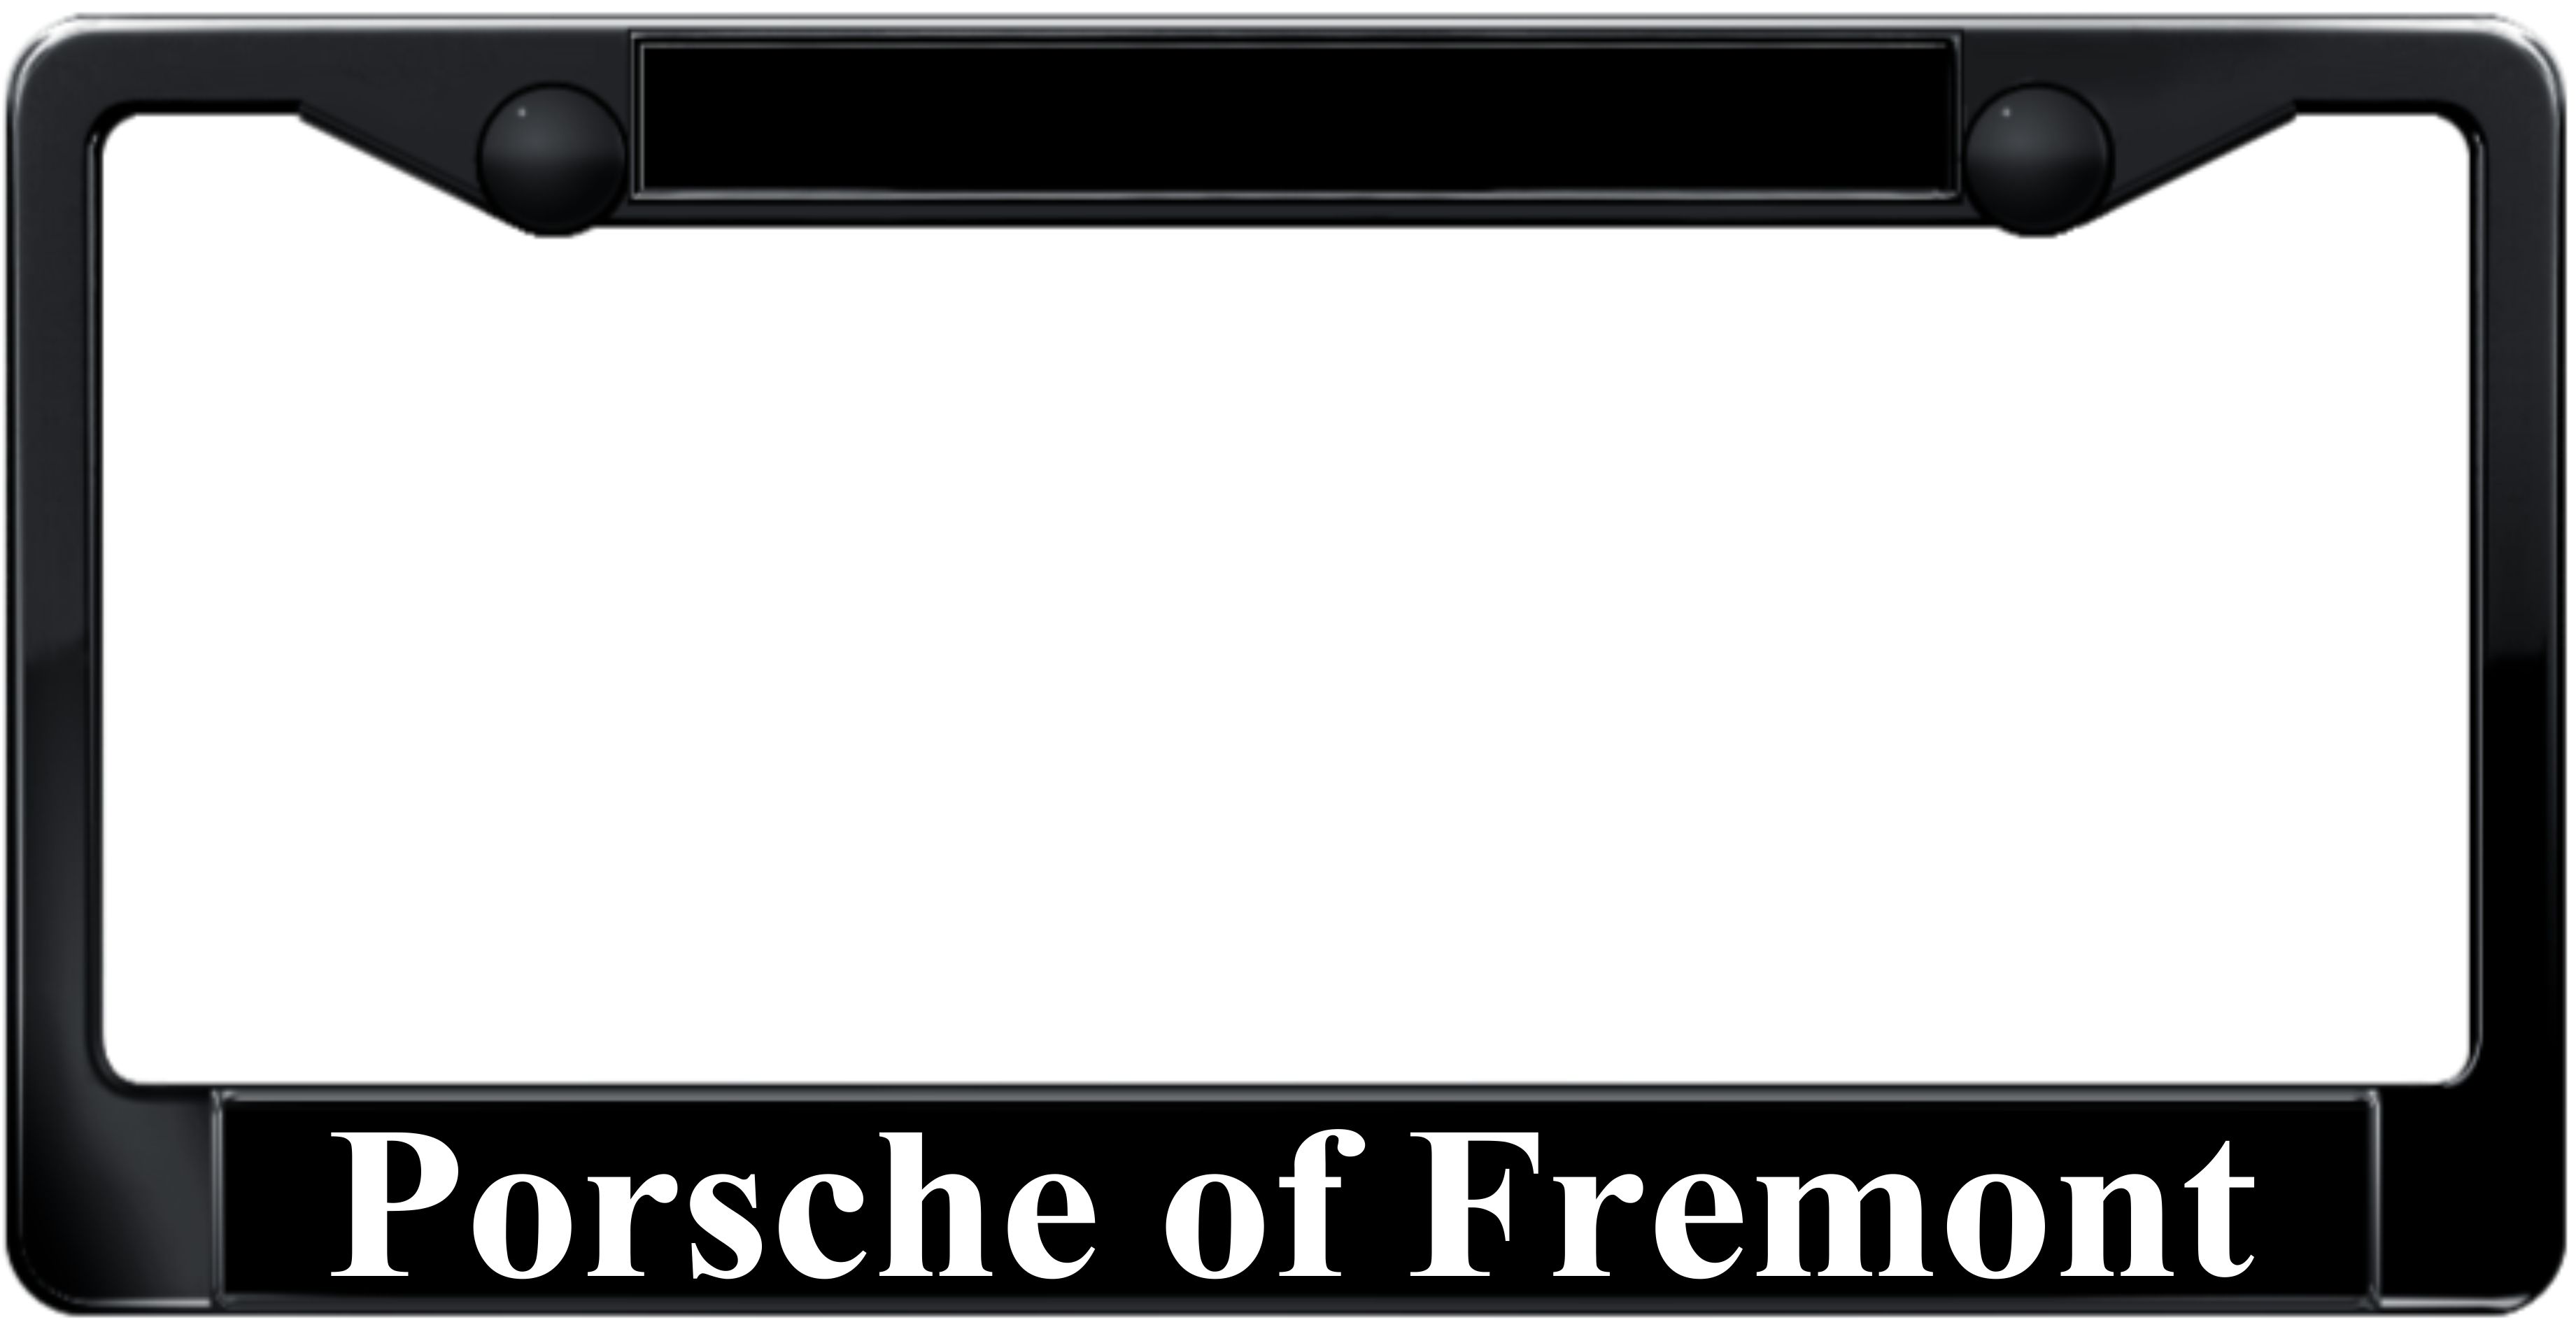 Porsche of Fremont